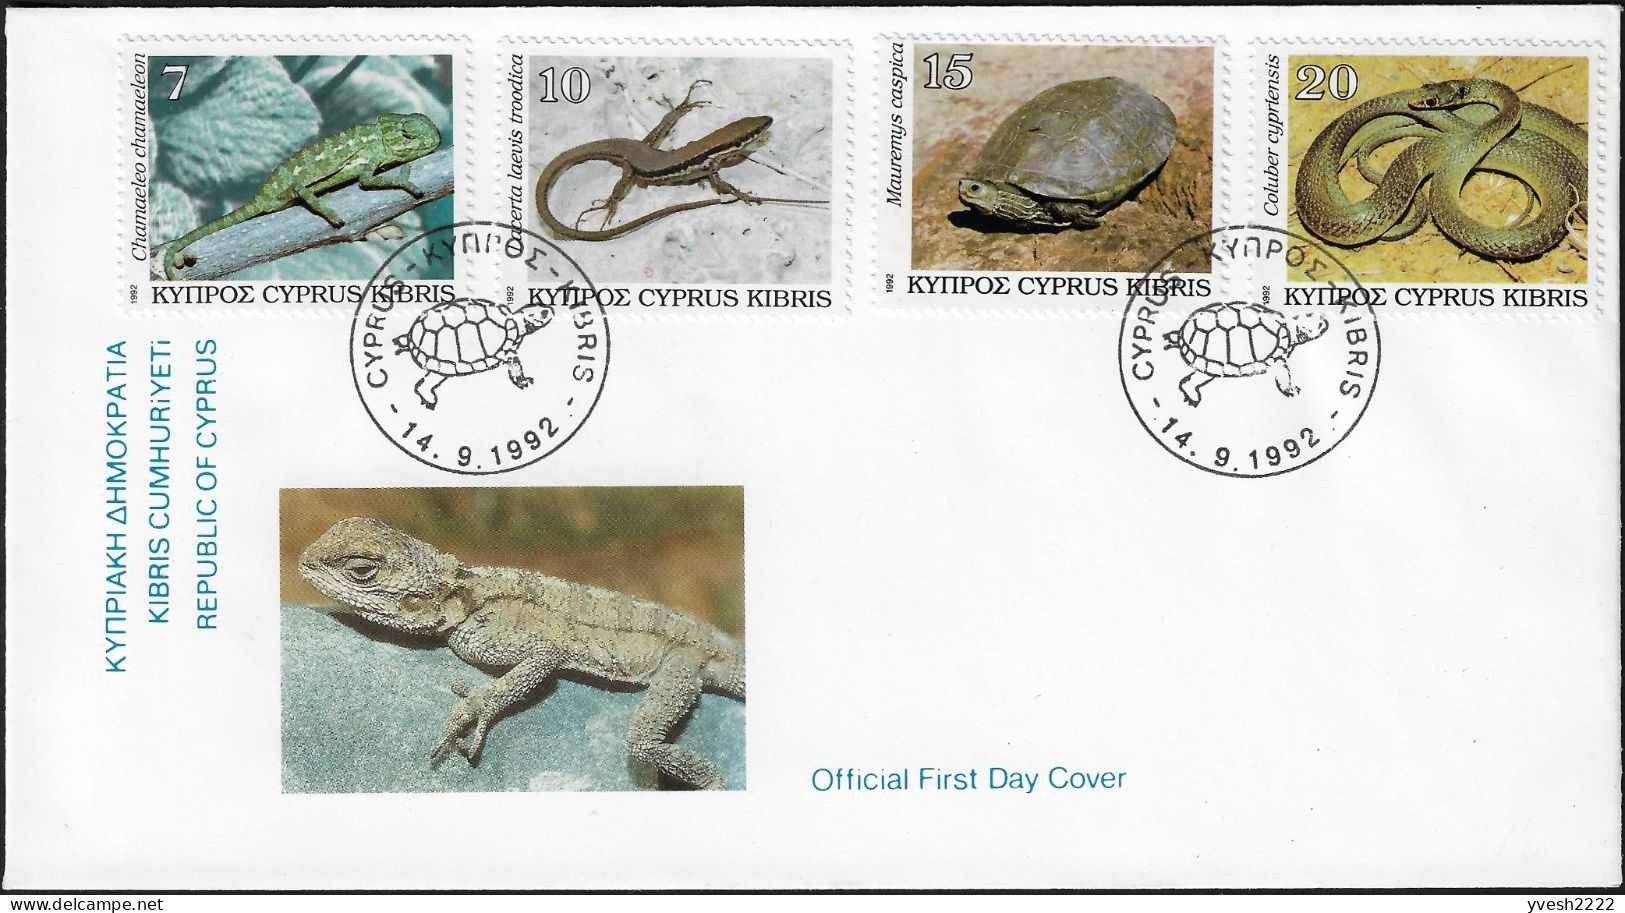 Chypre 1992 Y&T 794 à 797 Sur FDC. Faune, Reptiles De Chypre. Caméléon, Lézard, Tortue Et Serpent - Schildpadden